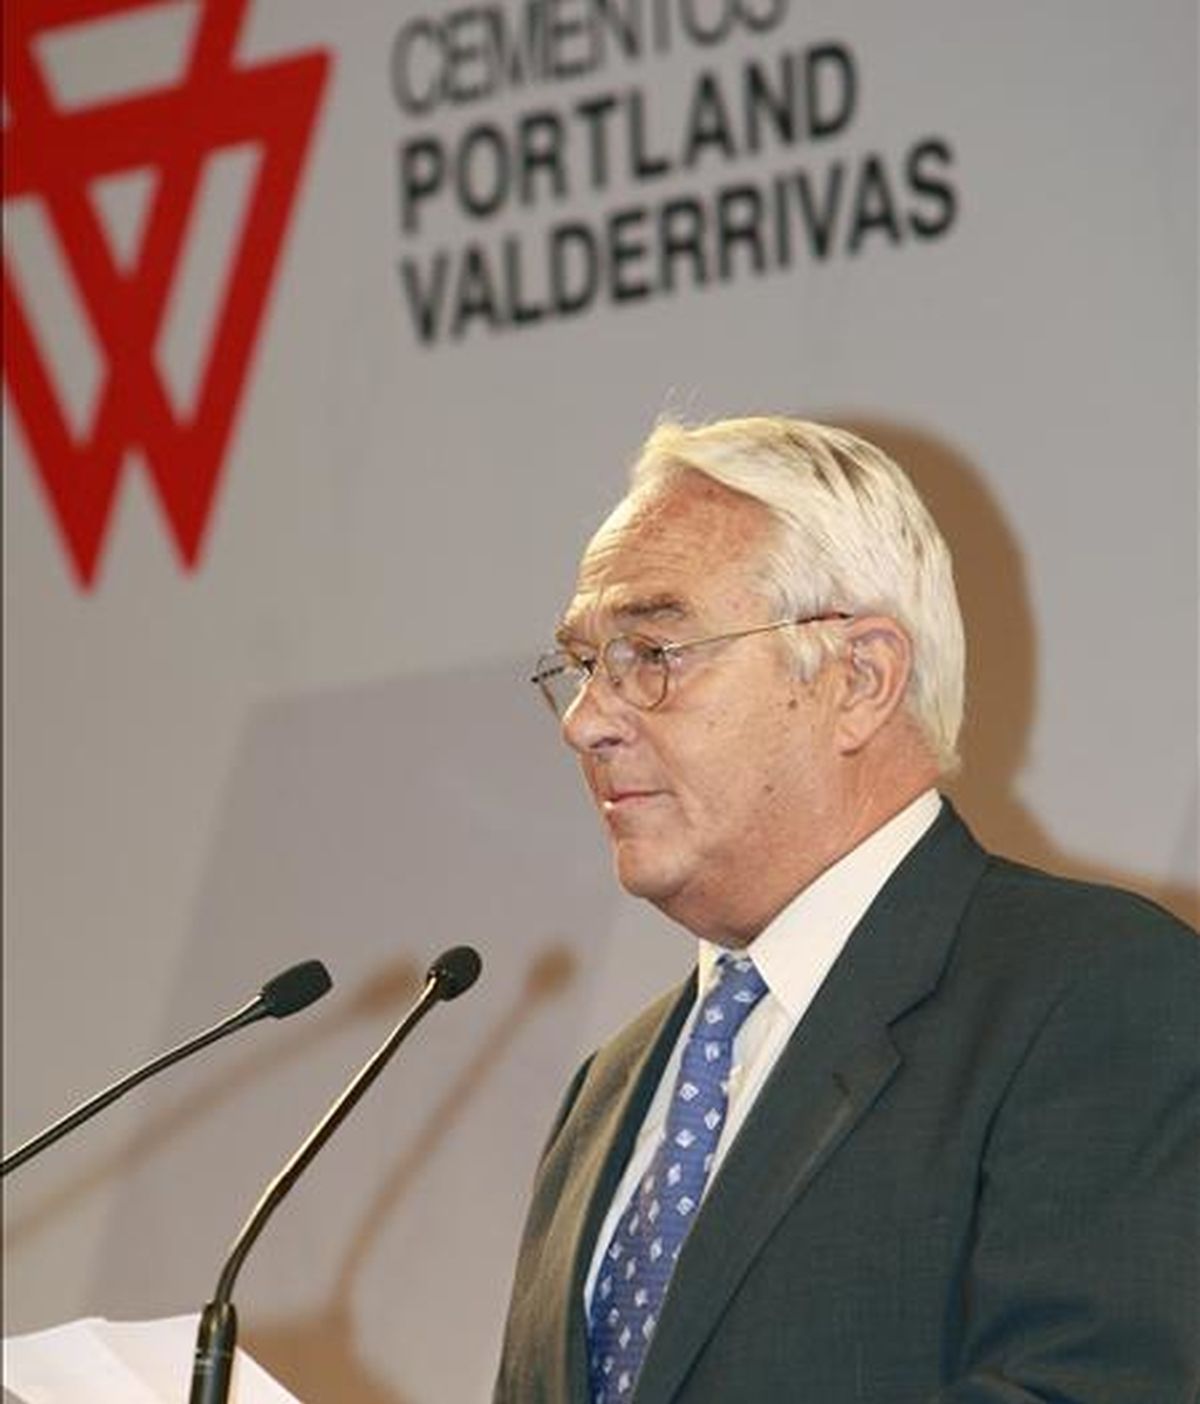 El presidente y consejero delegado de cementos Pórtland Valderribas, José Ignacio Martínez Ynzenga. EFE/Archivo